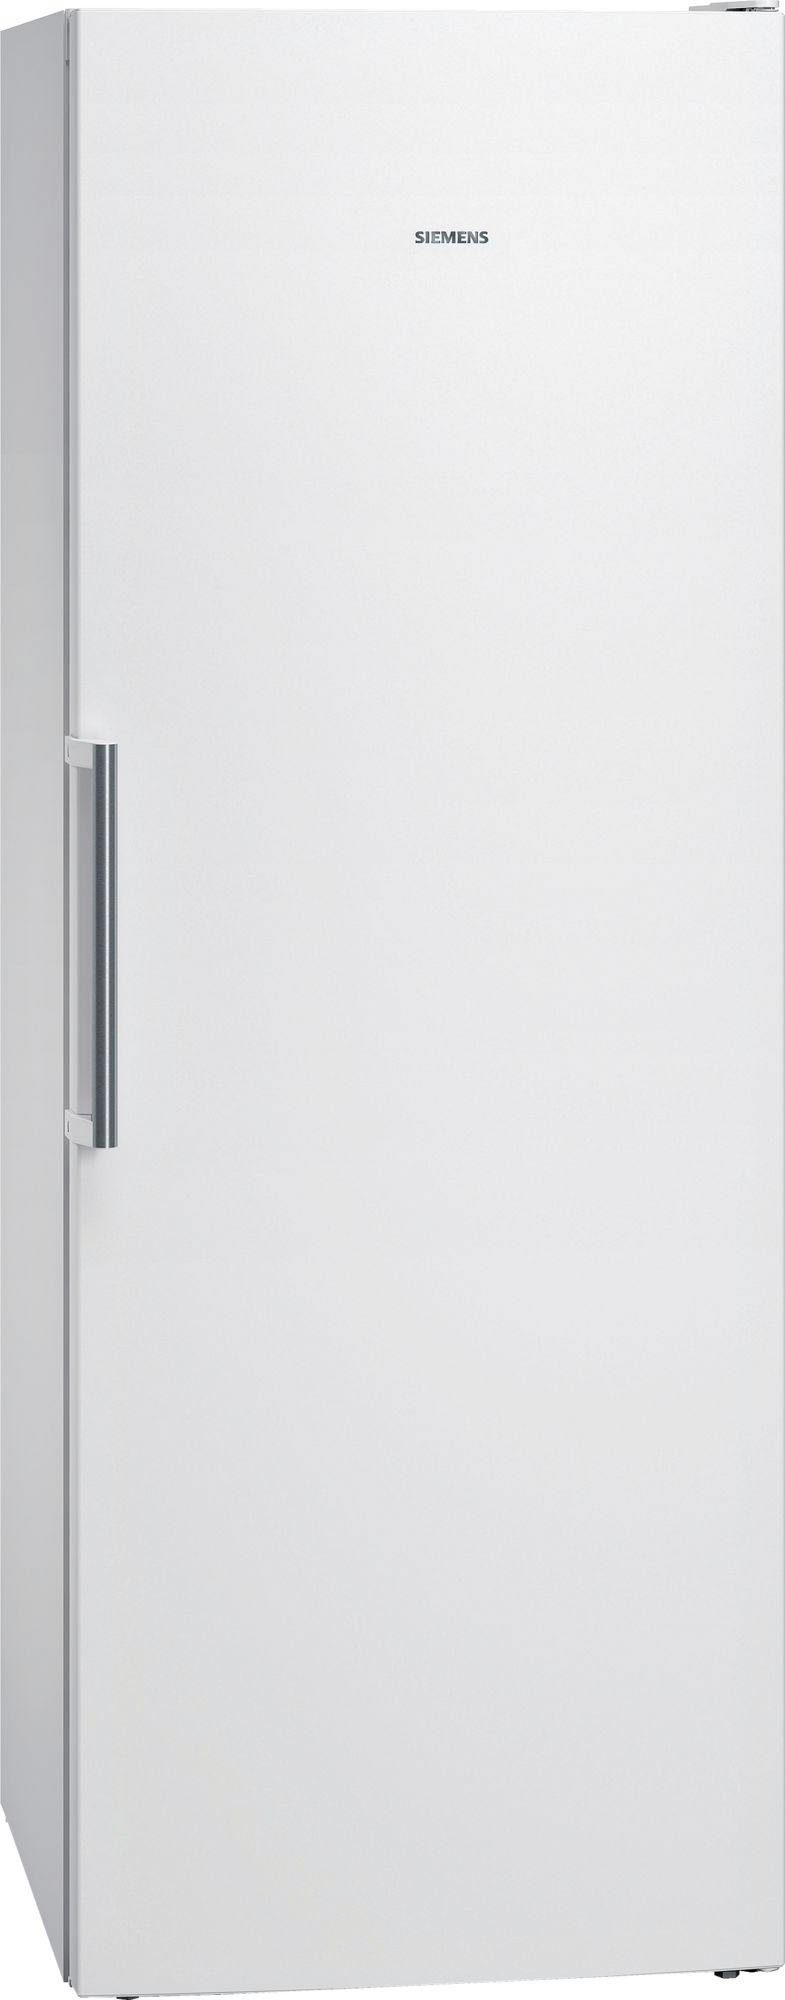 SIEMENS Gefrierschrank GS58NAWDV, 191 cm hoch, 70 cm breit, freshSense -  Konstante Temperatur durch Sensorik | Tiefkühlschränke